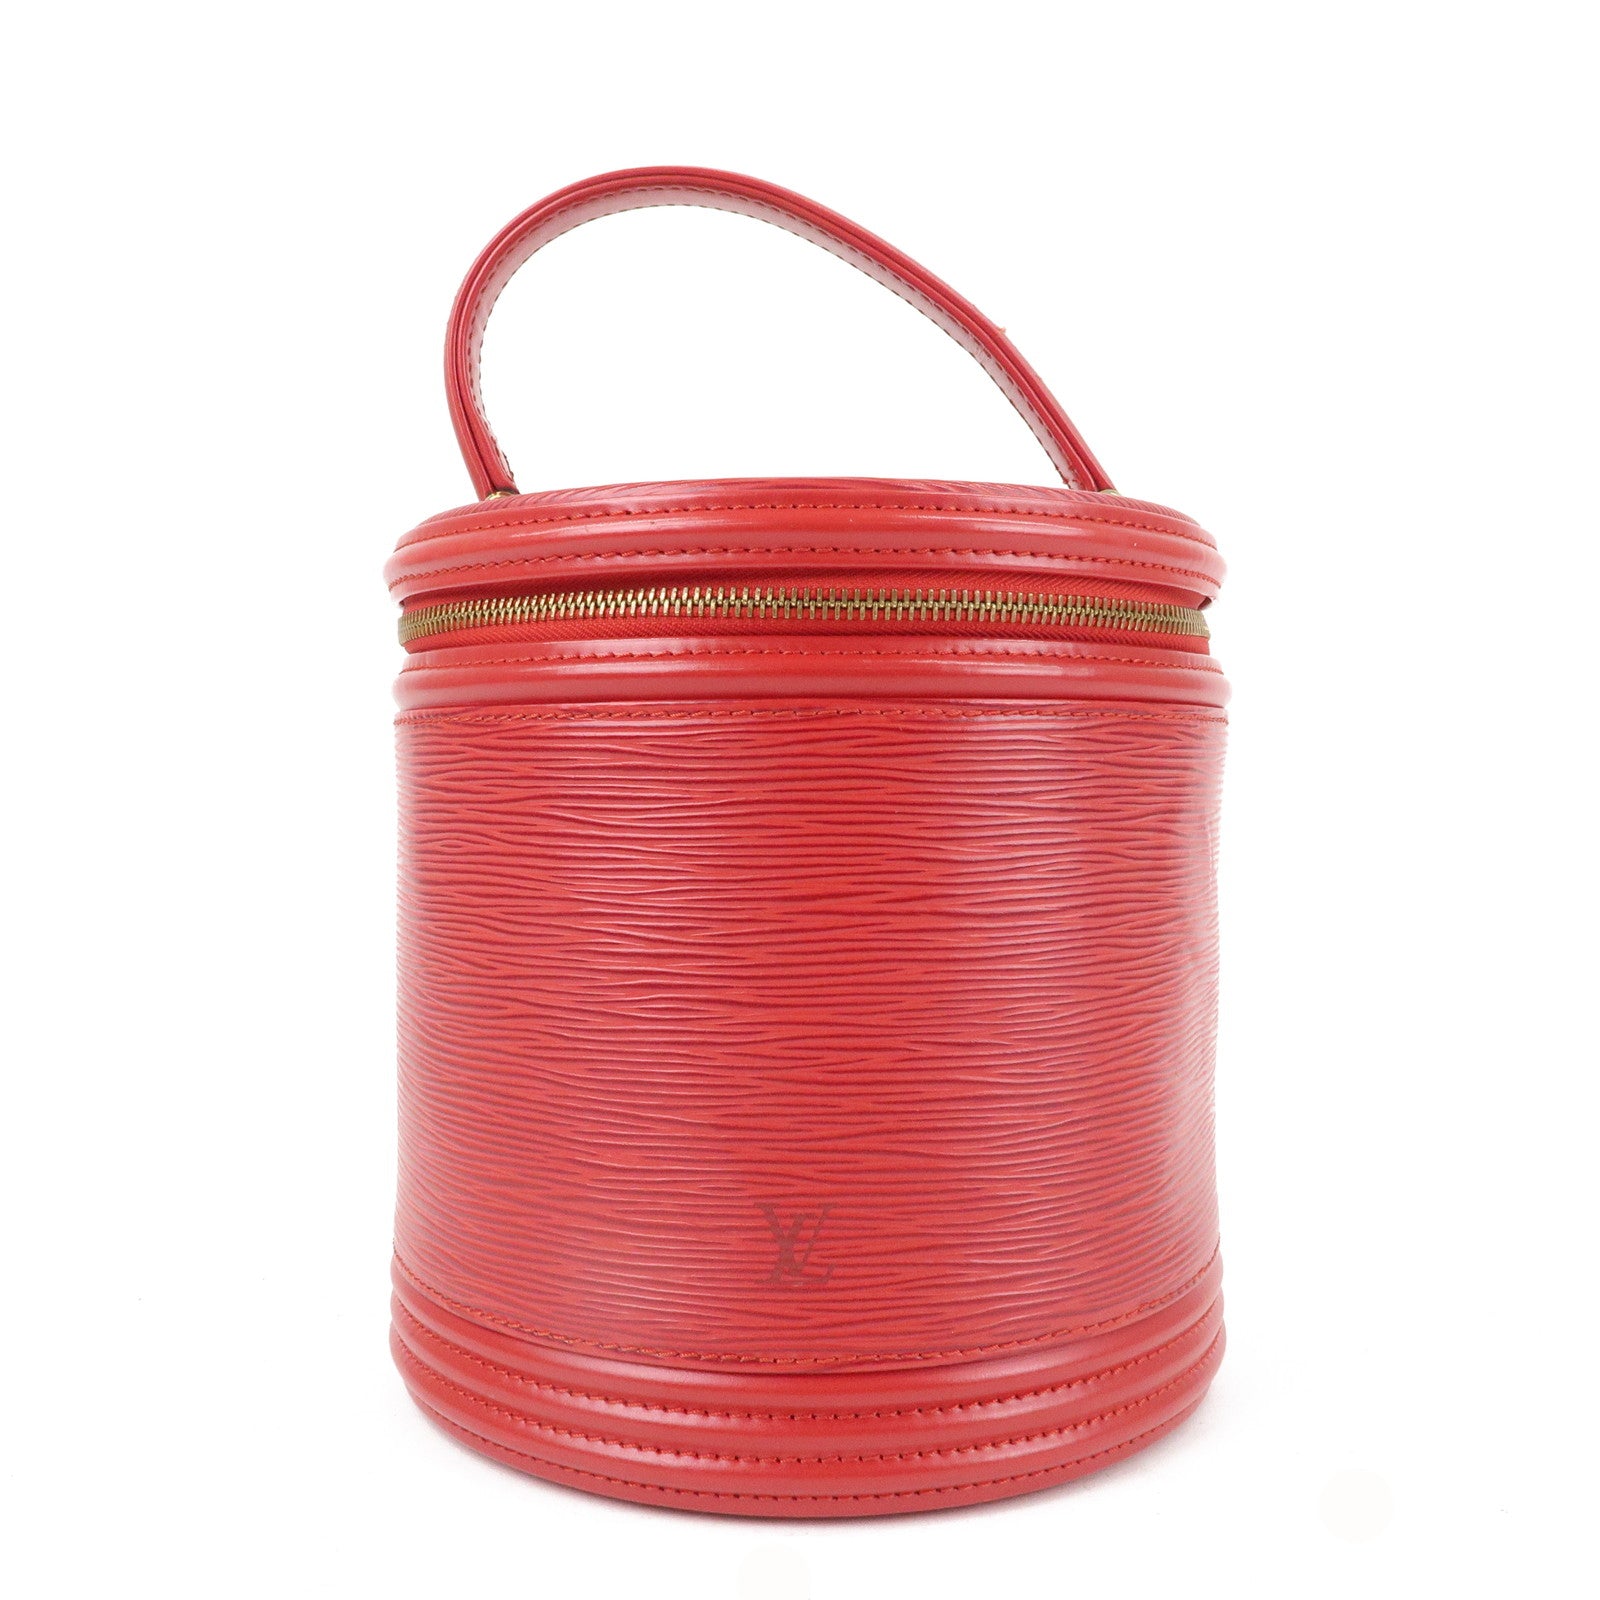 Authentic LOUIS VUITTON CANNES Hang Bag Epi Red Vintage